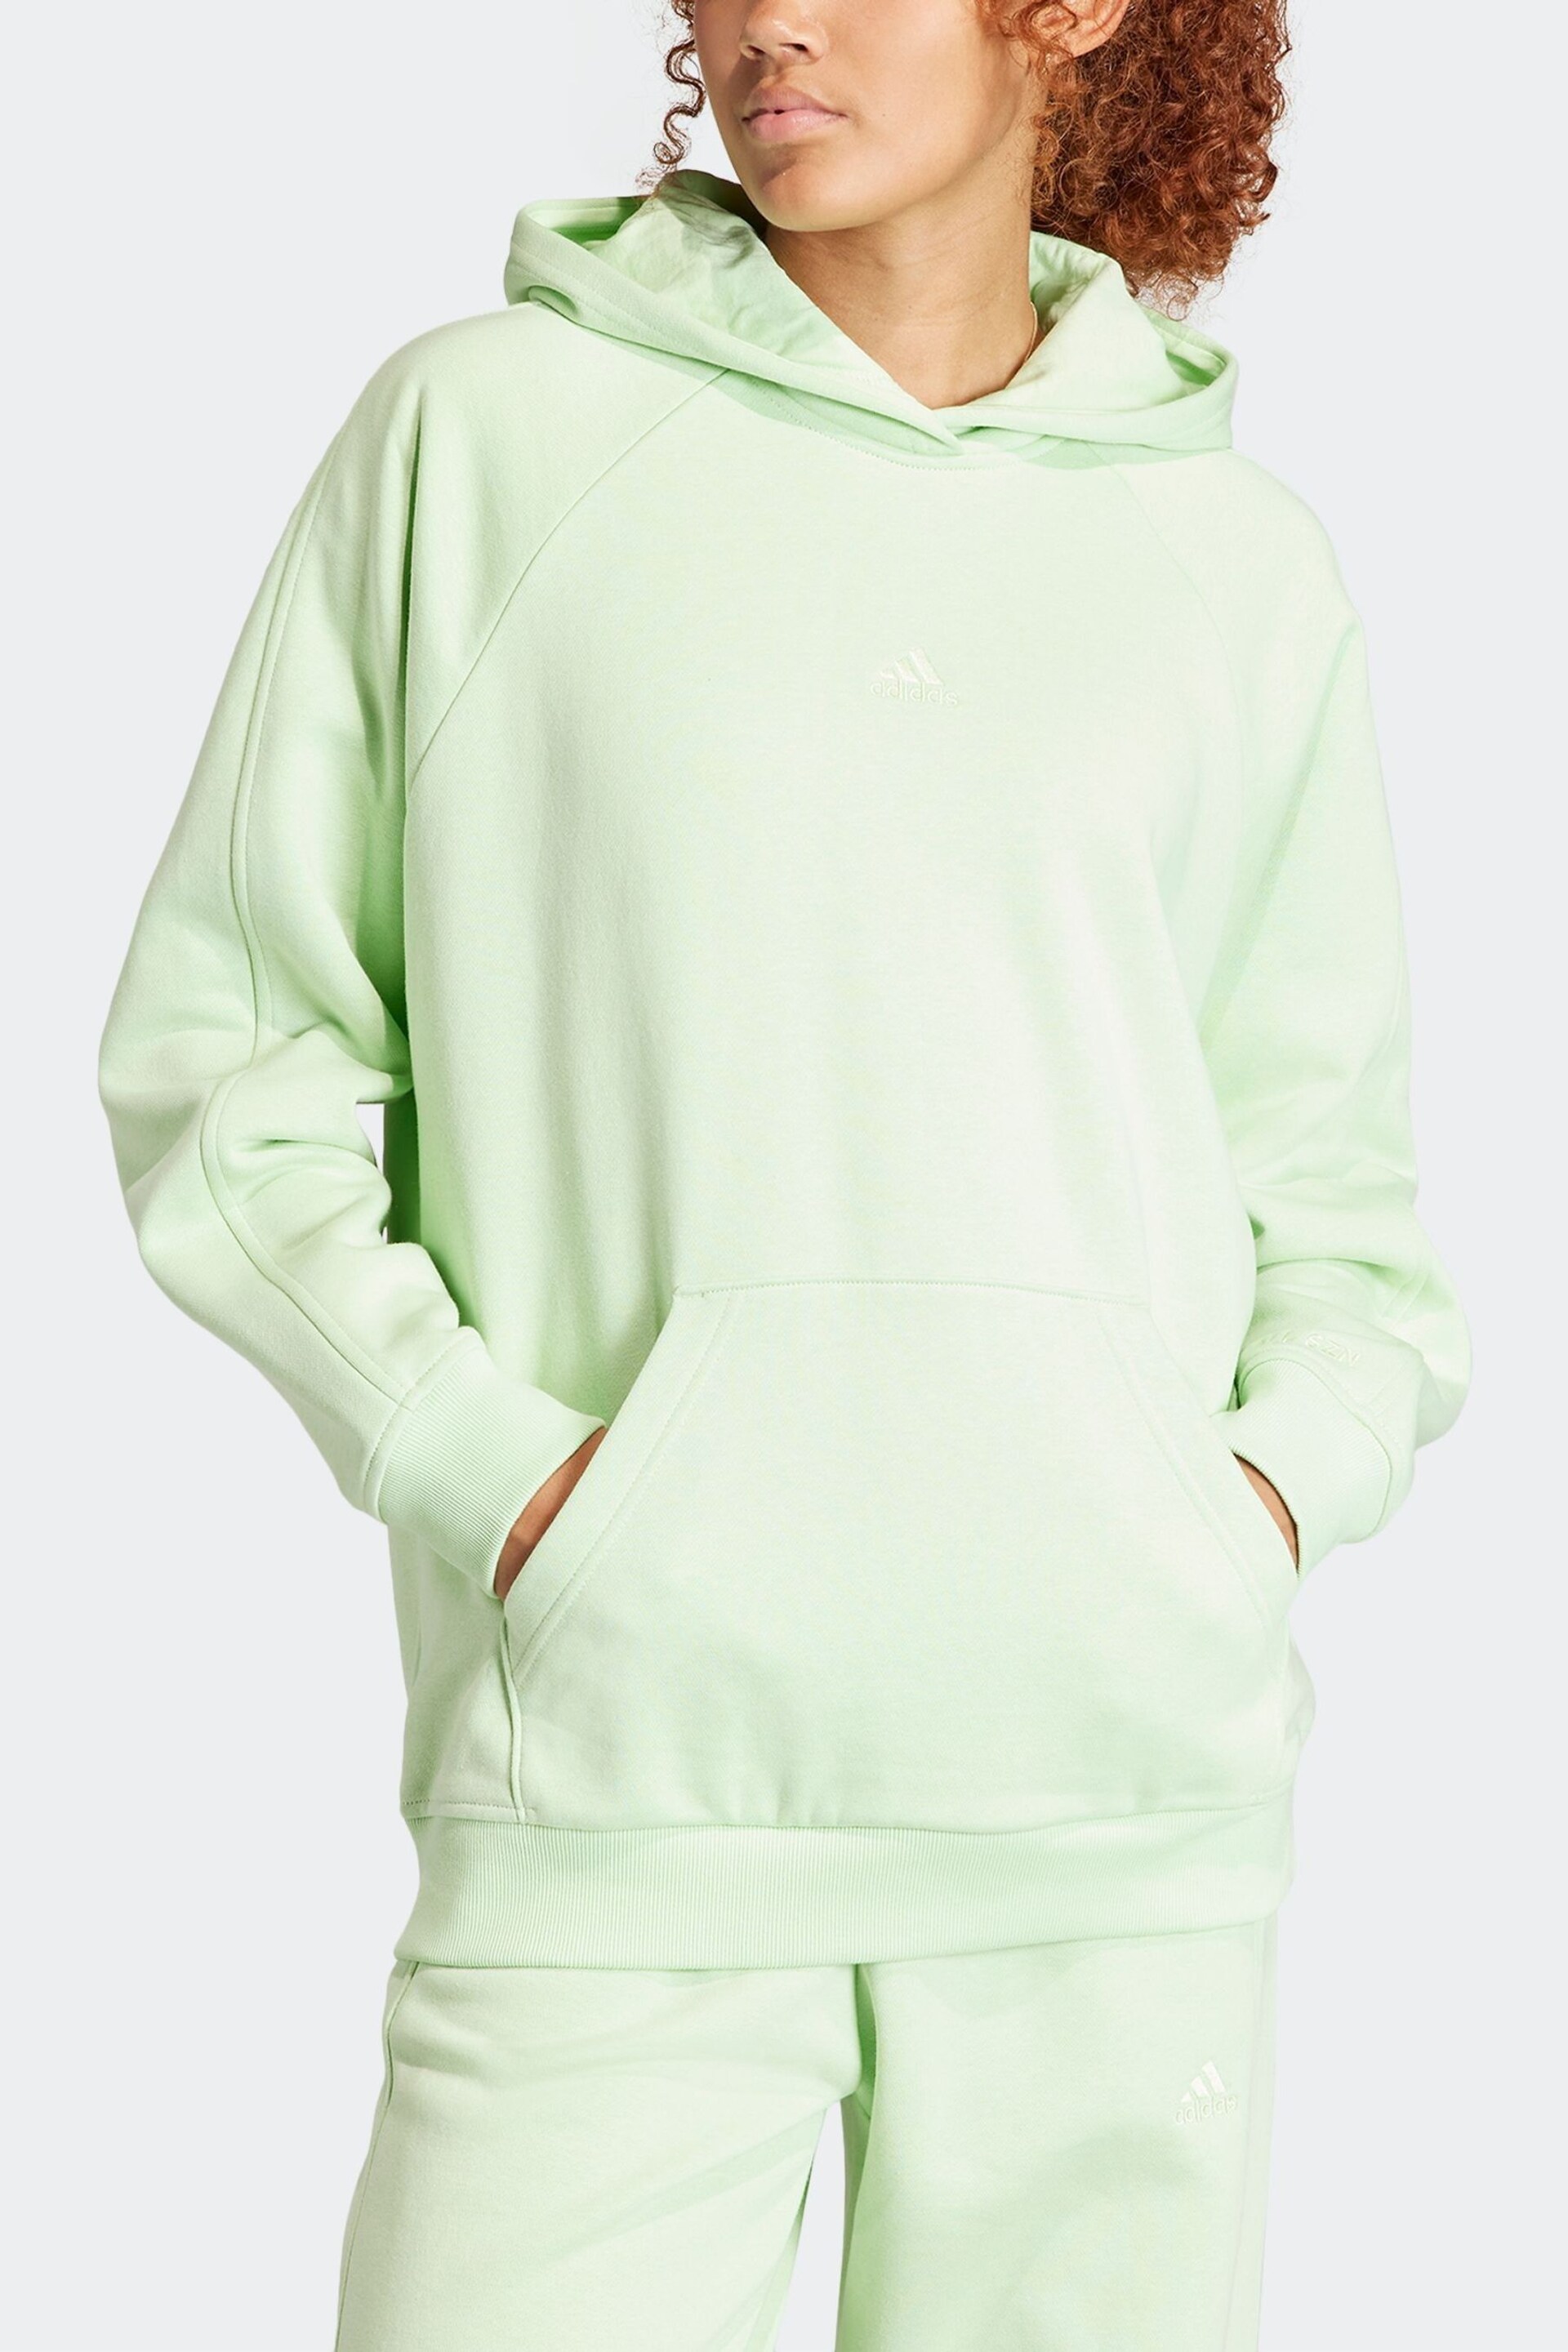 adidas Green Boyfriend Sportswear All Szn Fleece Hoodie - Image 4 of 7